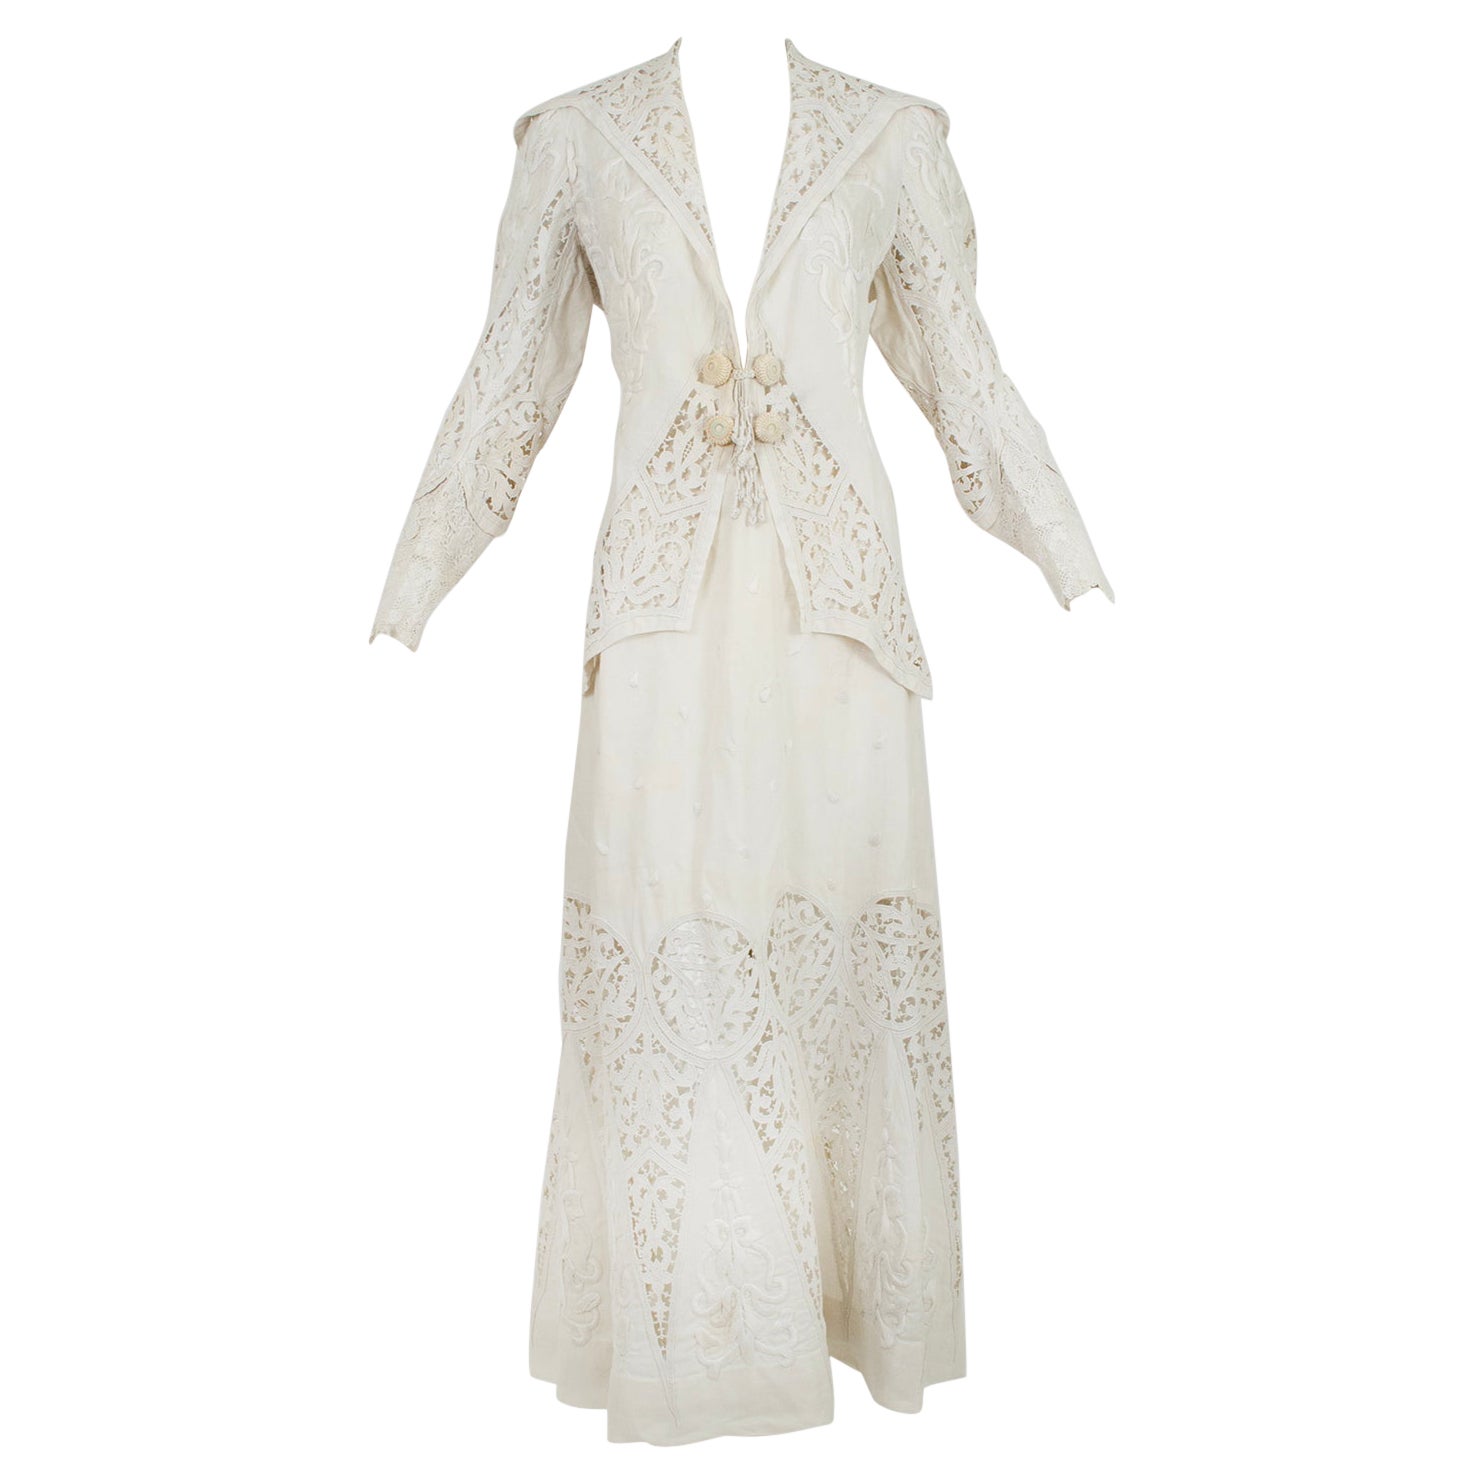 Costume de marche ou de mariage en coton et crochet irlandais blanc de l'époque édouardienne - L, années 1900 en vente